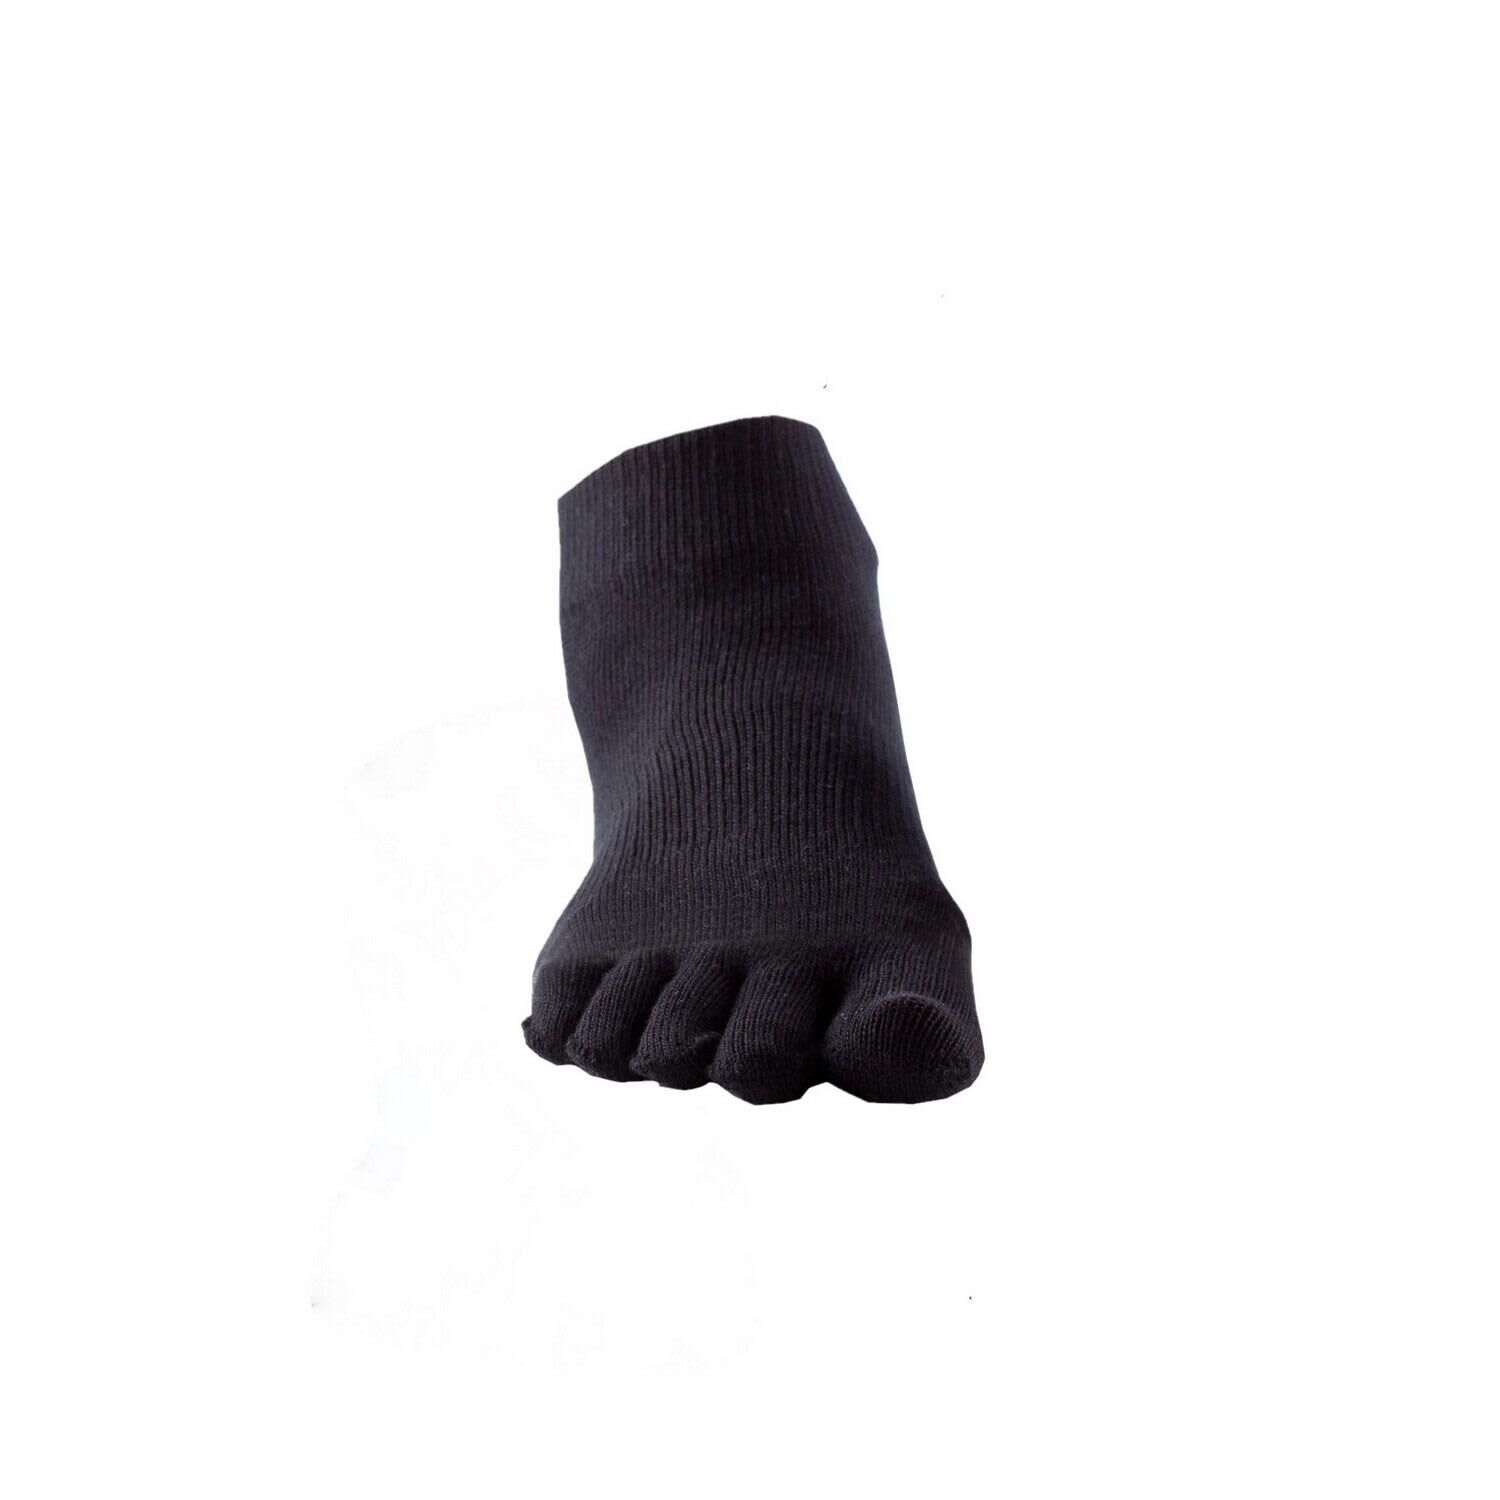 FITNESS-MAD Womens/Ladies Toe Socks (Black)